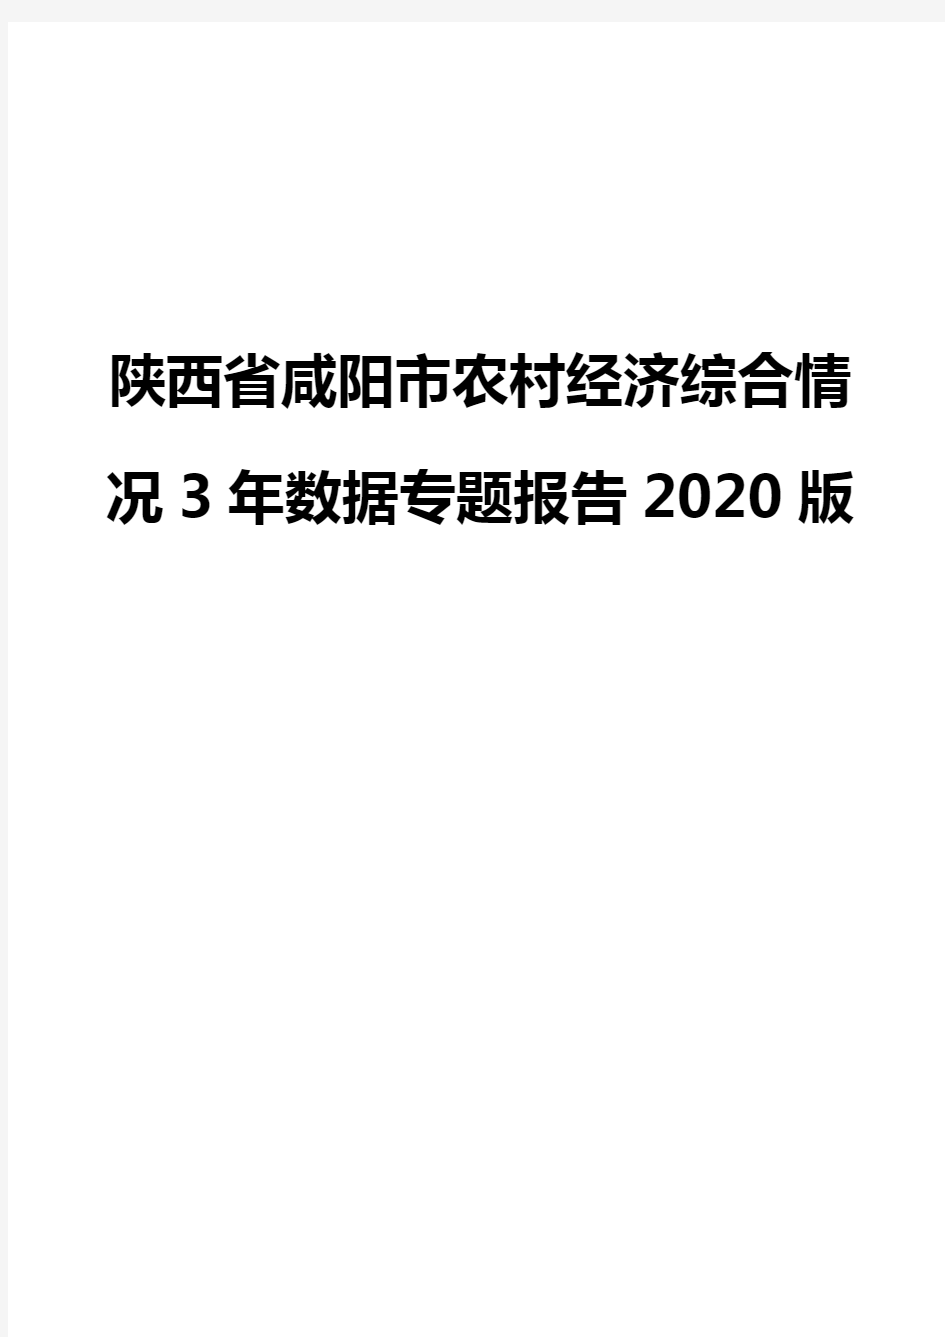 陕西省咸阳市农村经济综合情况3年数据专题报告2020版